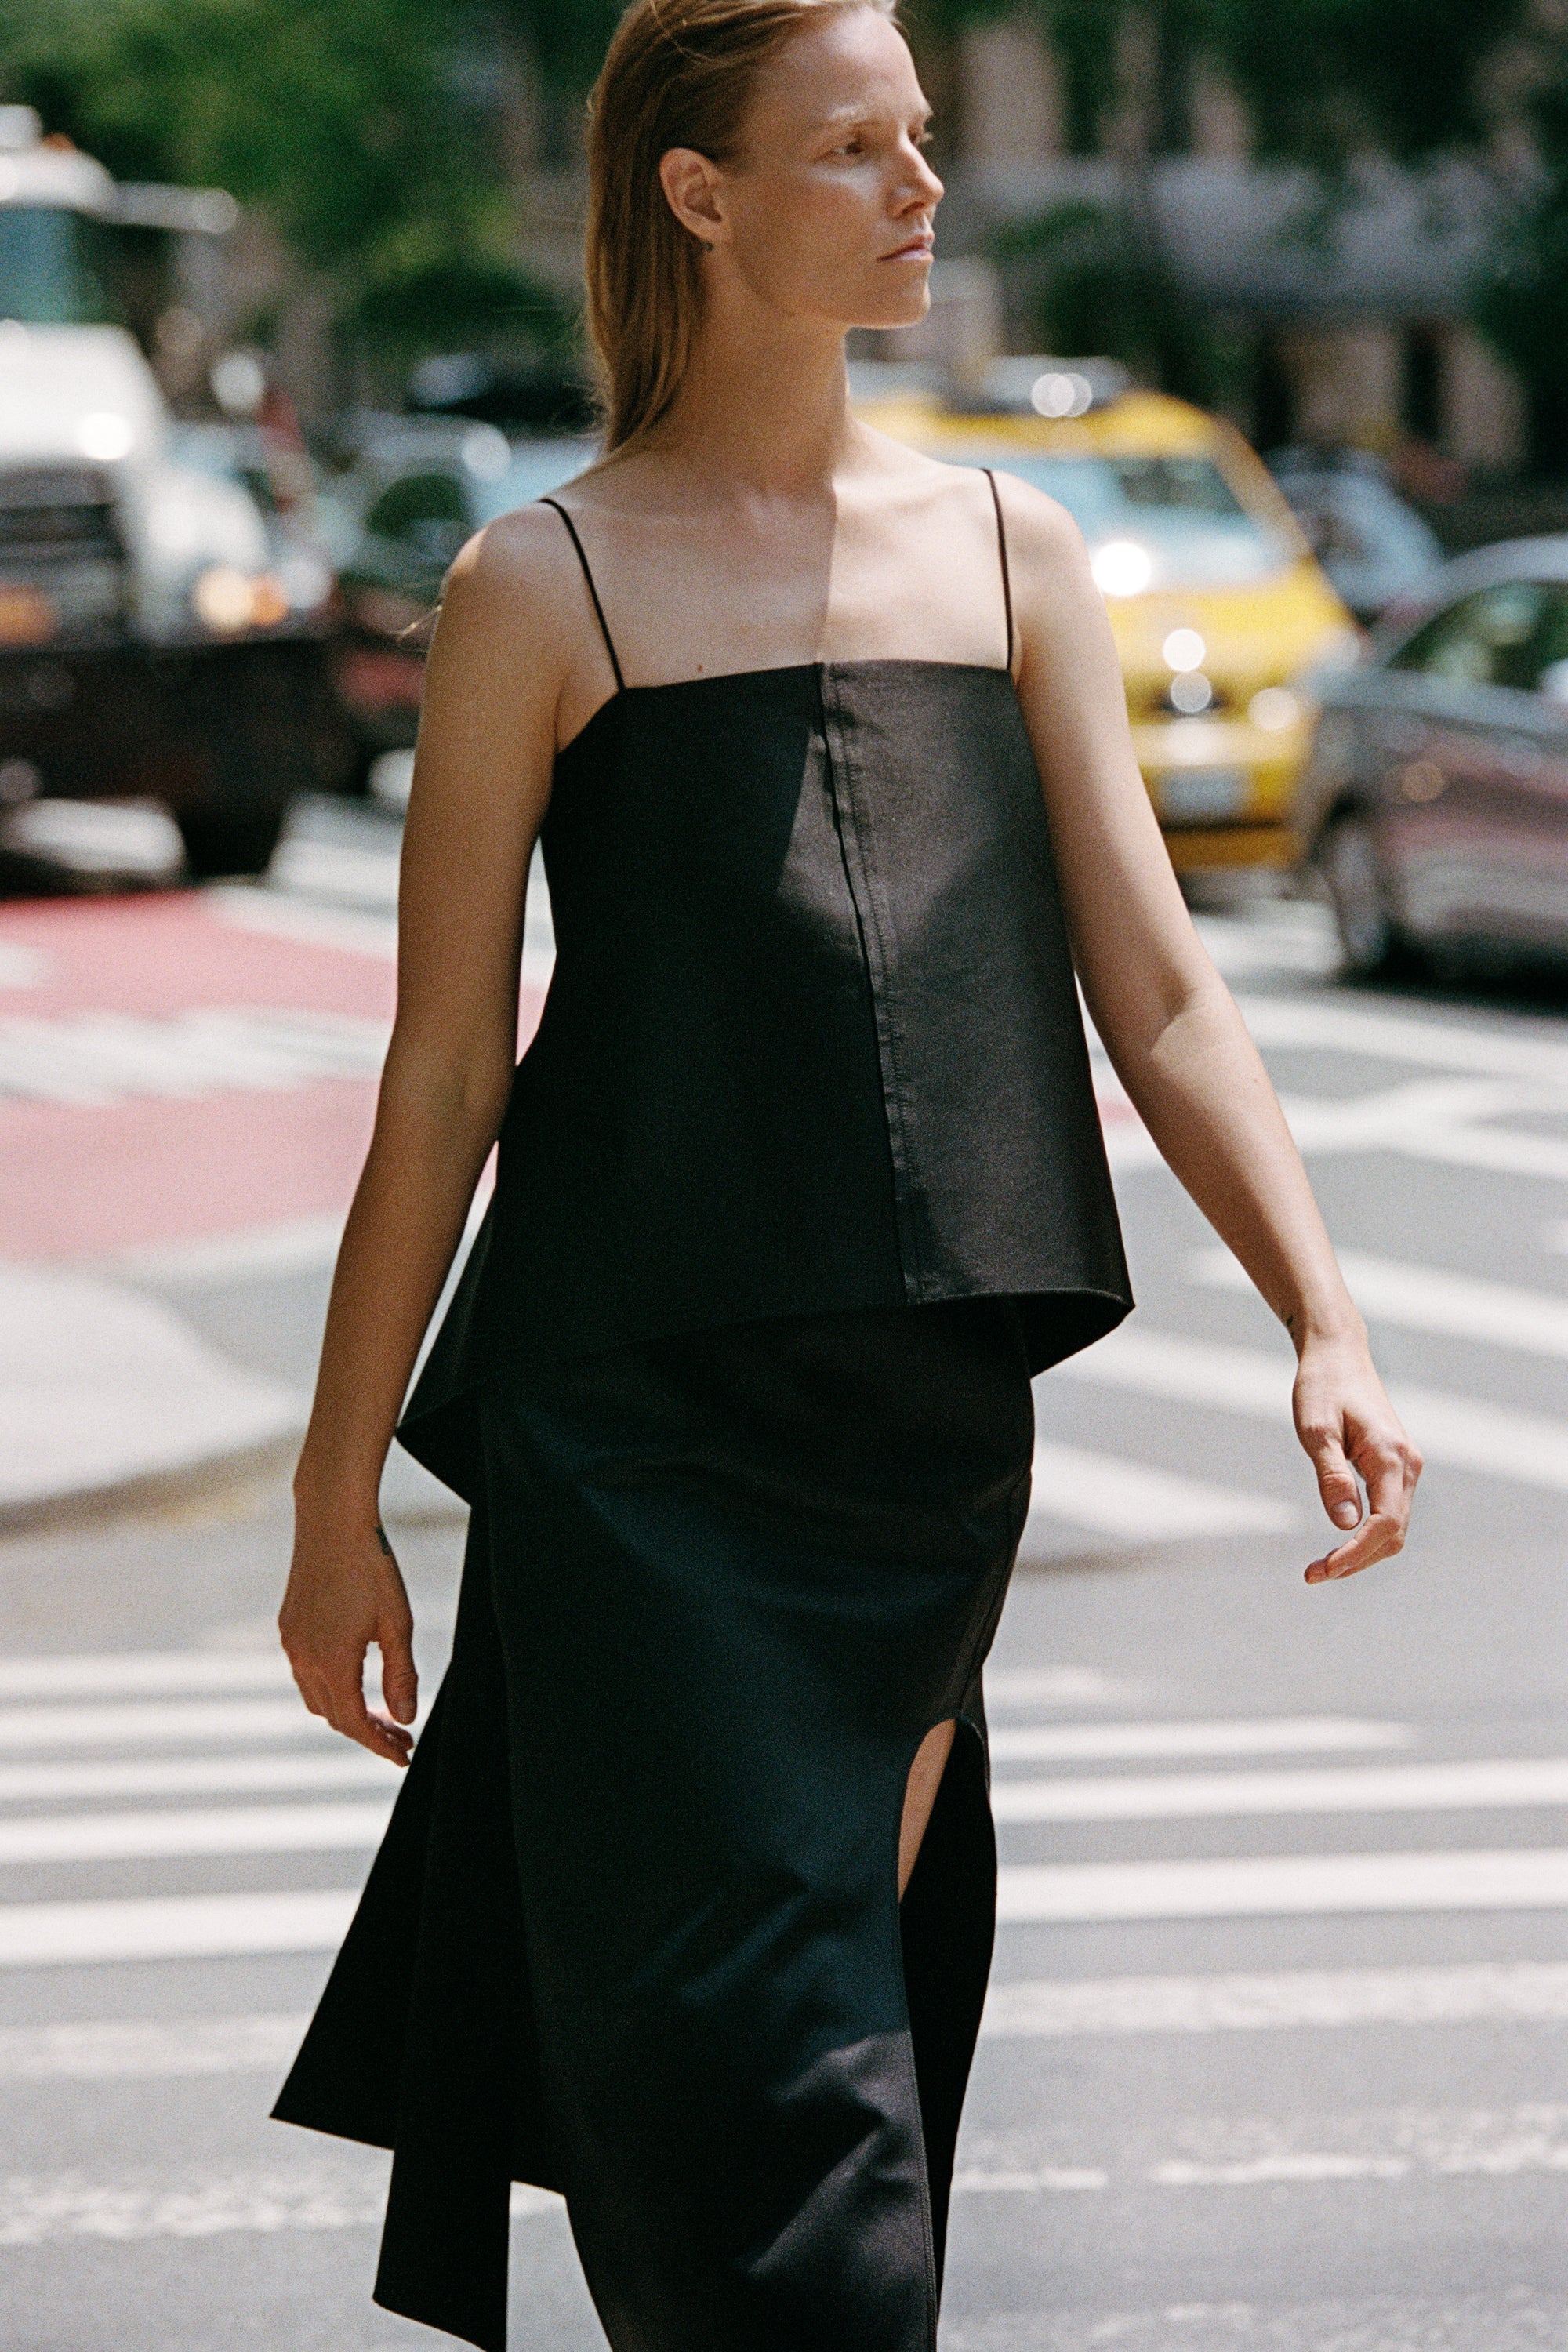 Model walking through the street wearing By Malene Birger.